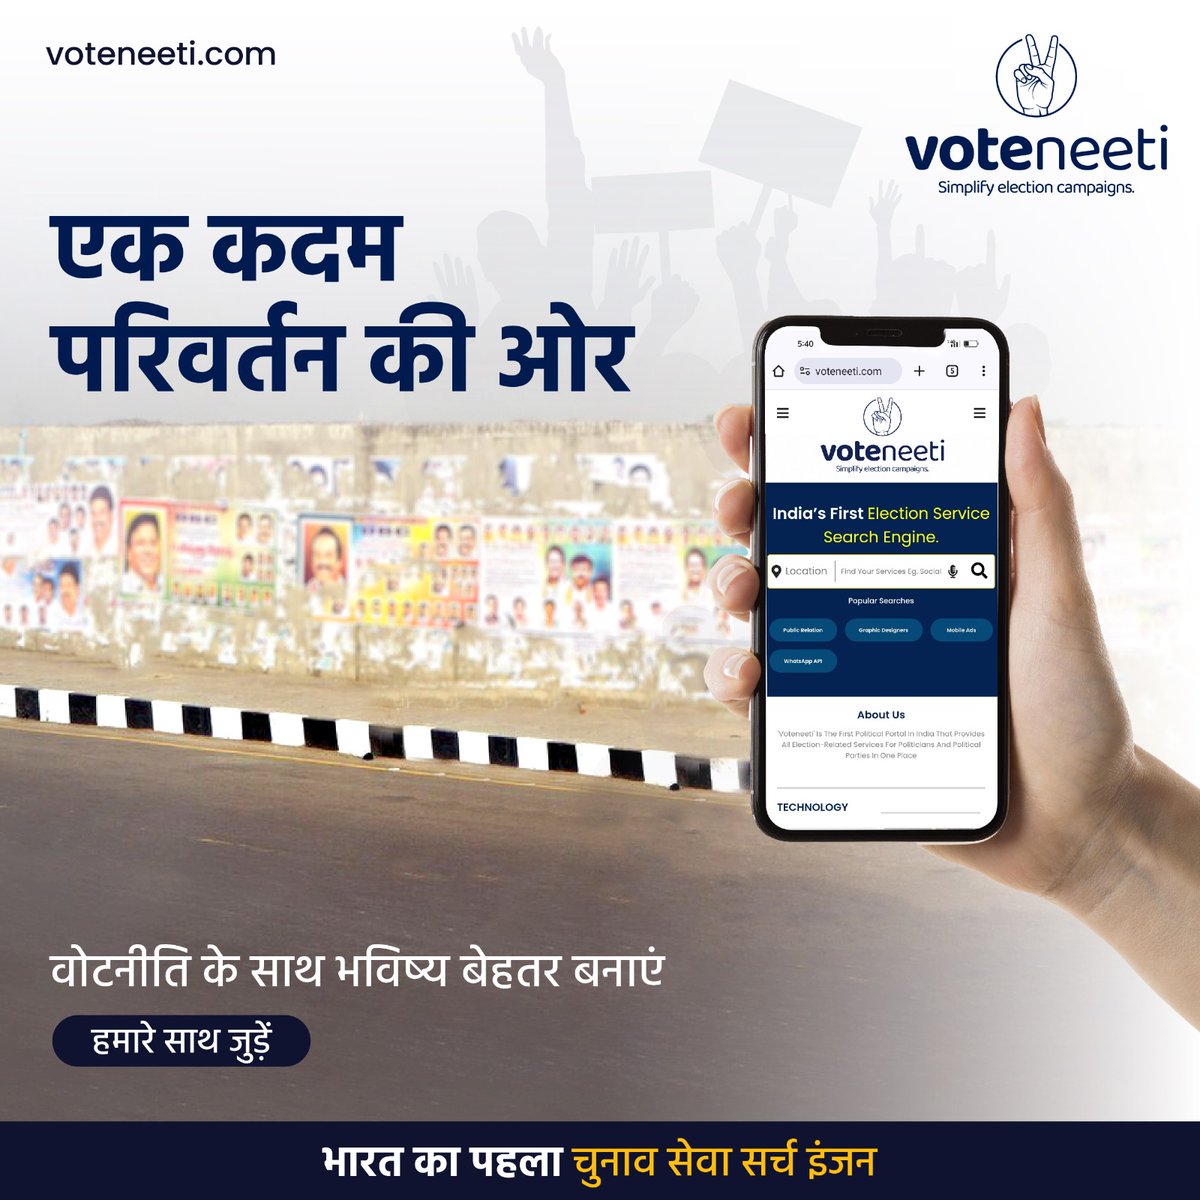 एकता और प्रगति से भरे भविष्य के लिए वोटनीति अपनाएं! आइए मिलकर एक नए राजनीतिक युग का आरंभ करें। 

आज ही 'वोटनीति' के साथ जुड़ें! voteneeti.com

#Voteneeti #UnityInPolitics #ElectionServices #PoliticalTools #DigitalElectionCampaignSolutions #indiaelectionsupport